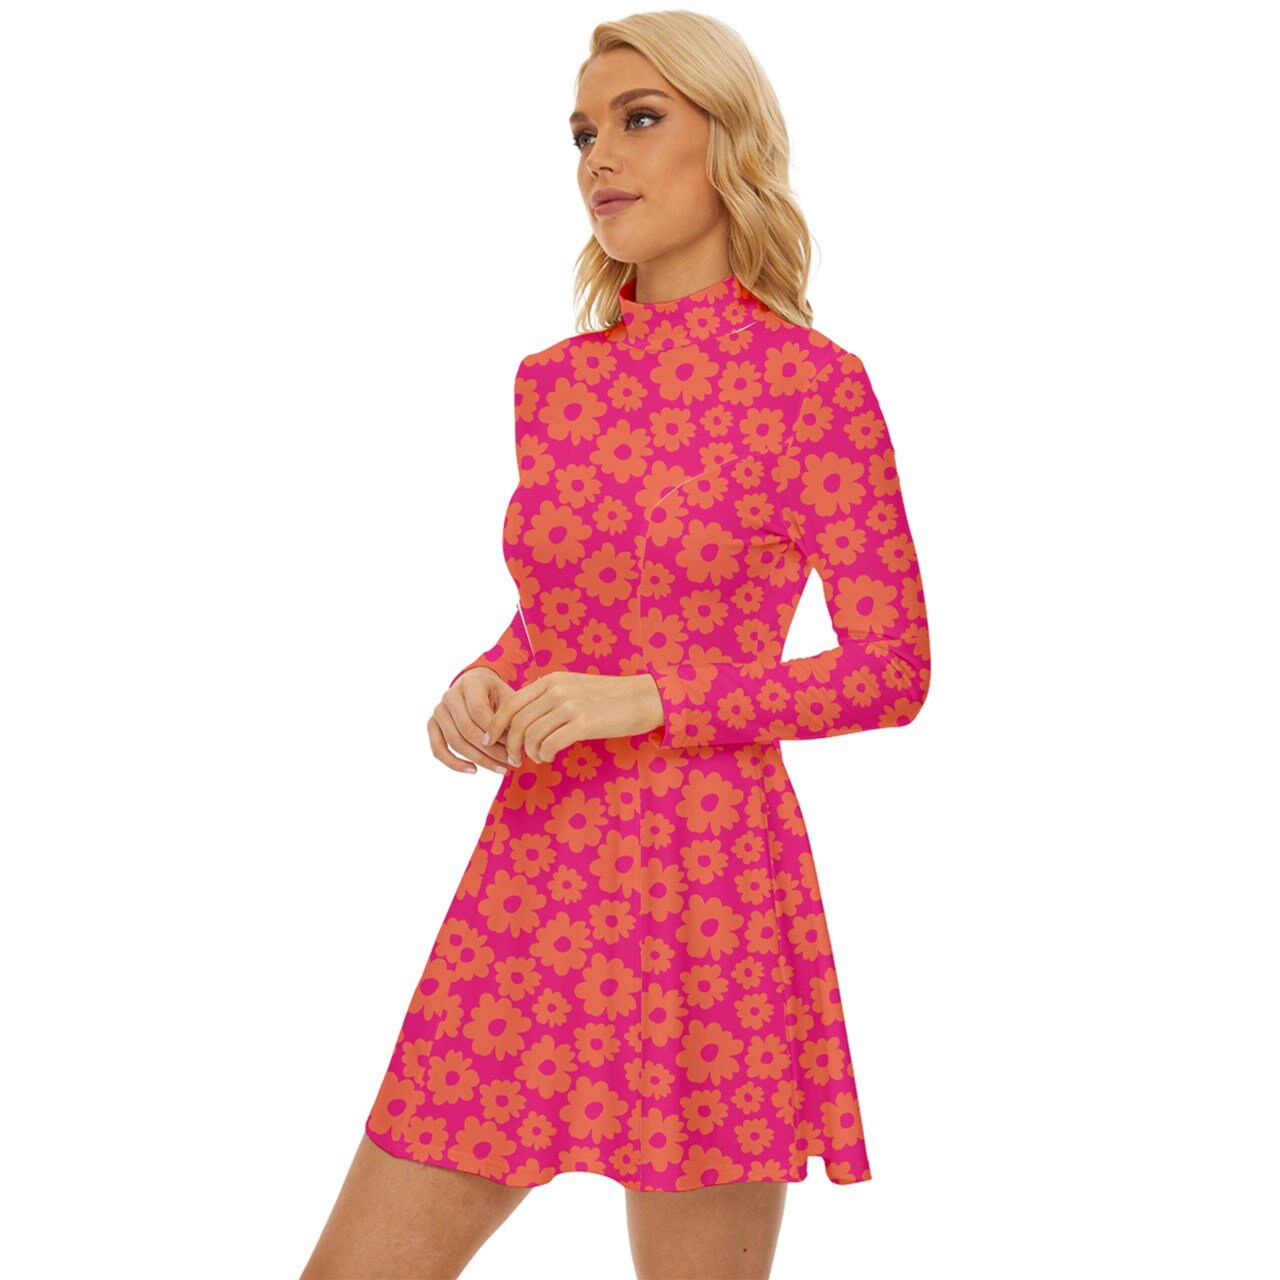 Style vestimentaire des années 60, robe Mod, robe Mod rose, robe col tortue, robe GOGO, robe de style années 60, mini robe des années 60, robe florale, robe rétro